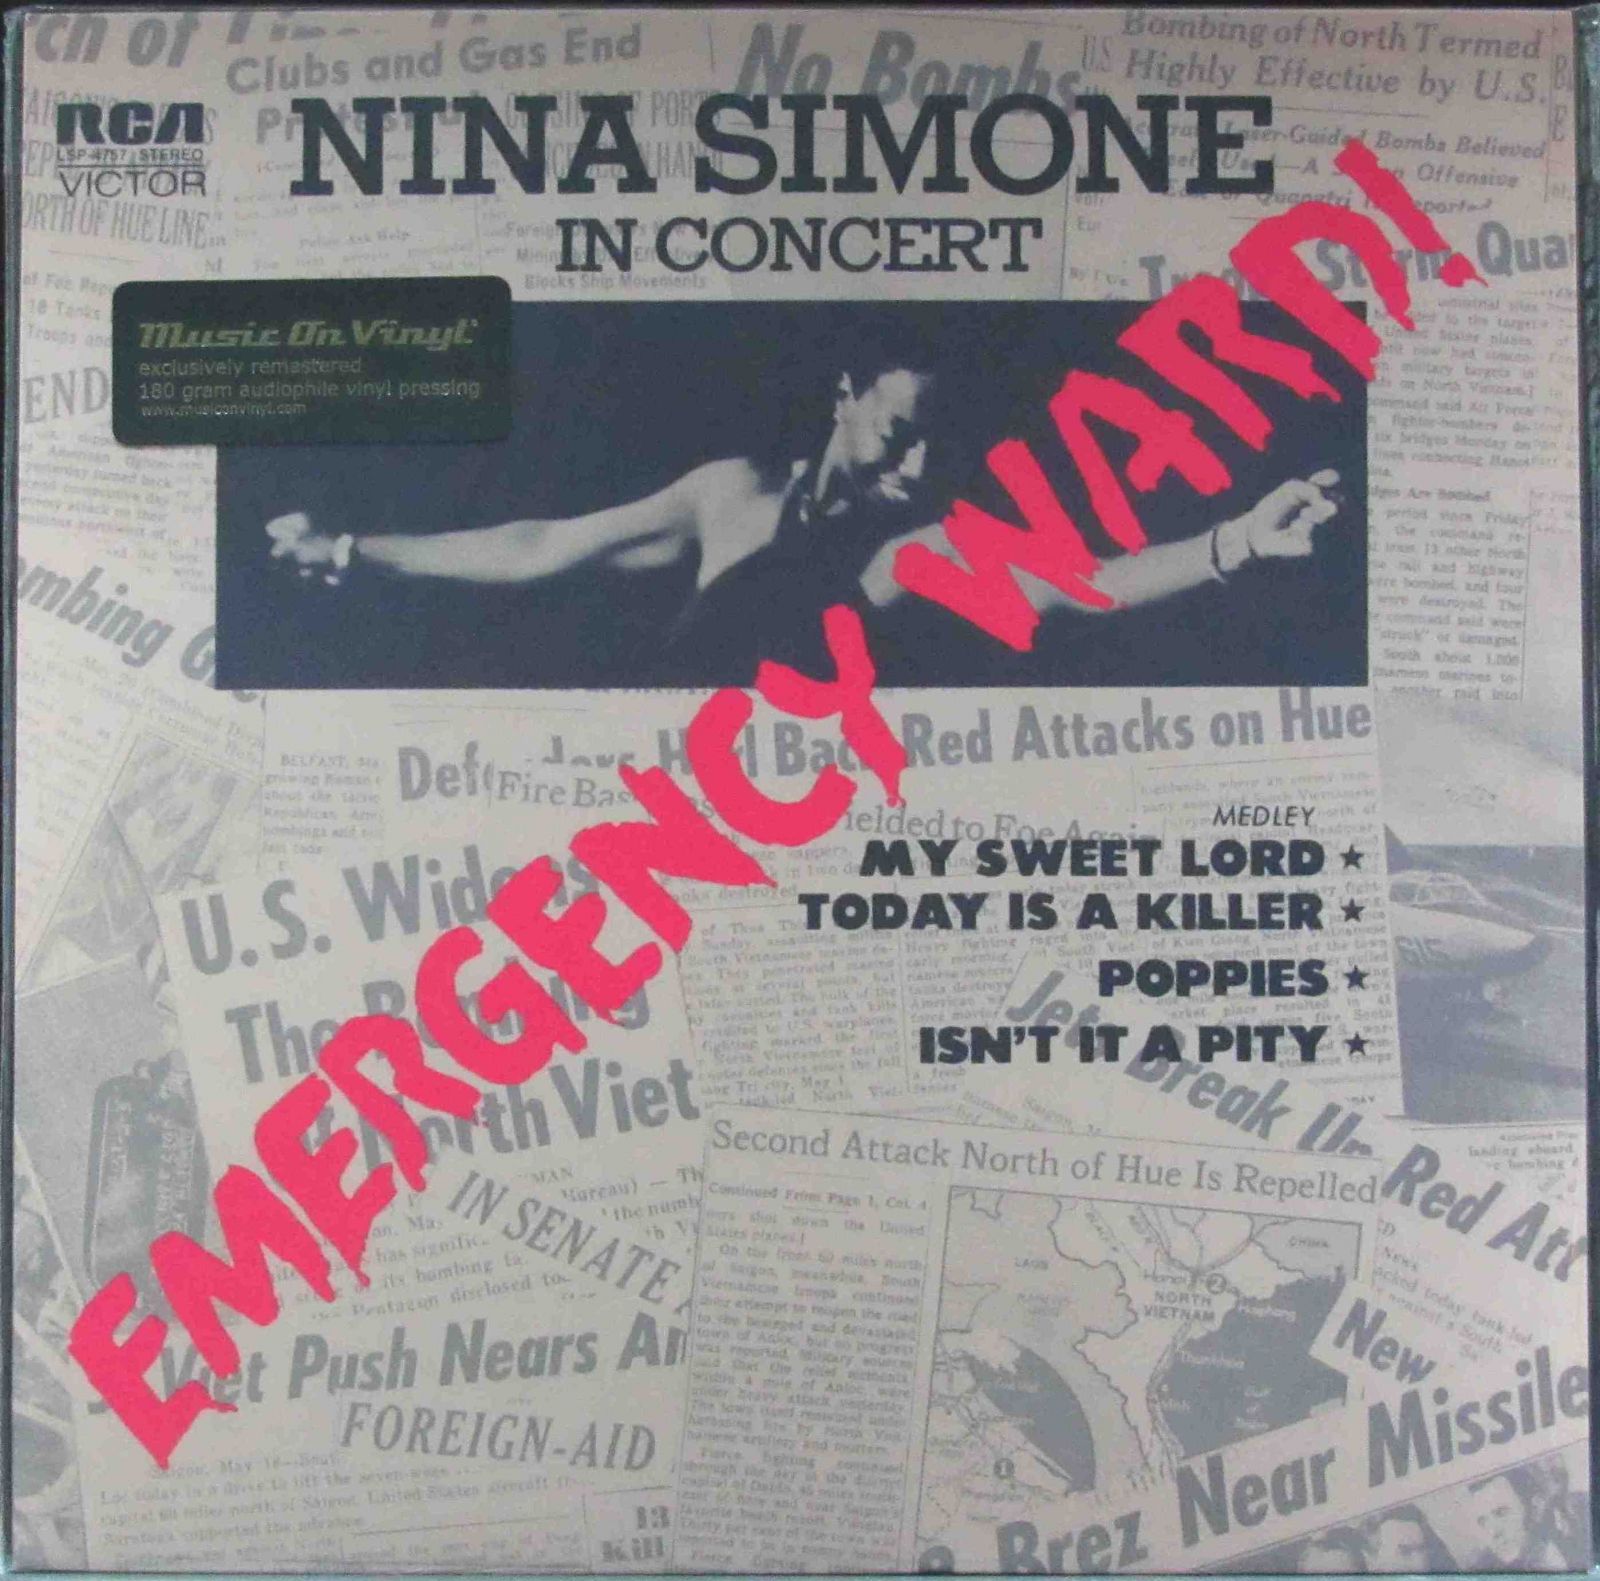 Виниловая пластинка Simone, Nina, Emergency Ward (8718469535231) nina simone emergency ward lp 2014 виниловая пластинка